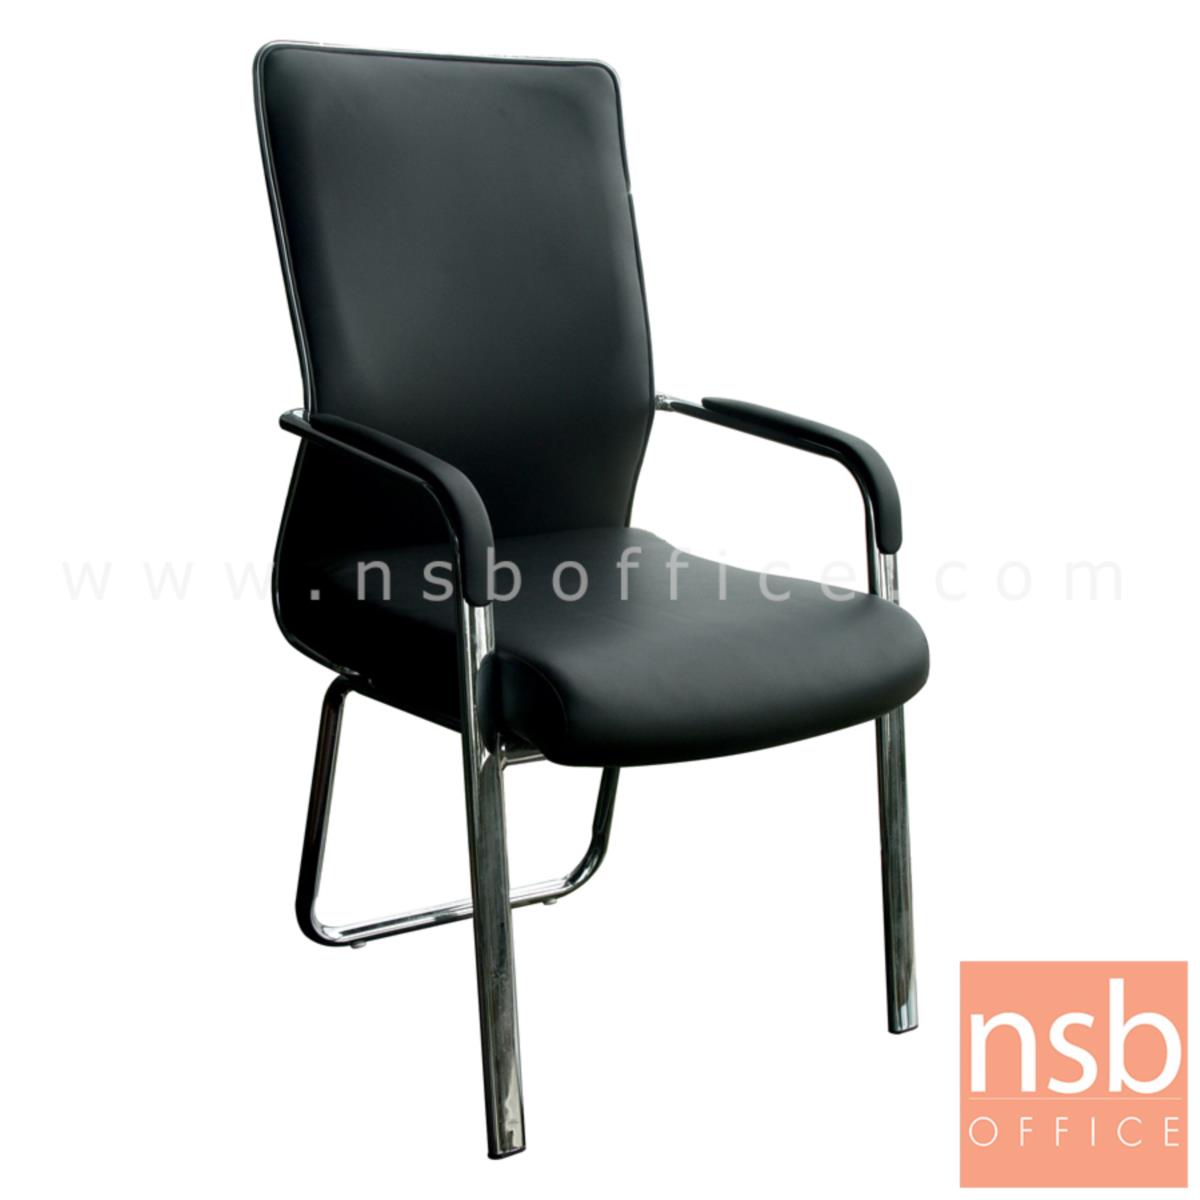 B04A176:เก้าอี้รับแขก รุ่น ID-ZM3 หุ้มหนังเทียม โครงขาเหล็ก 